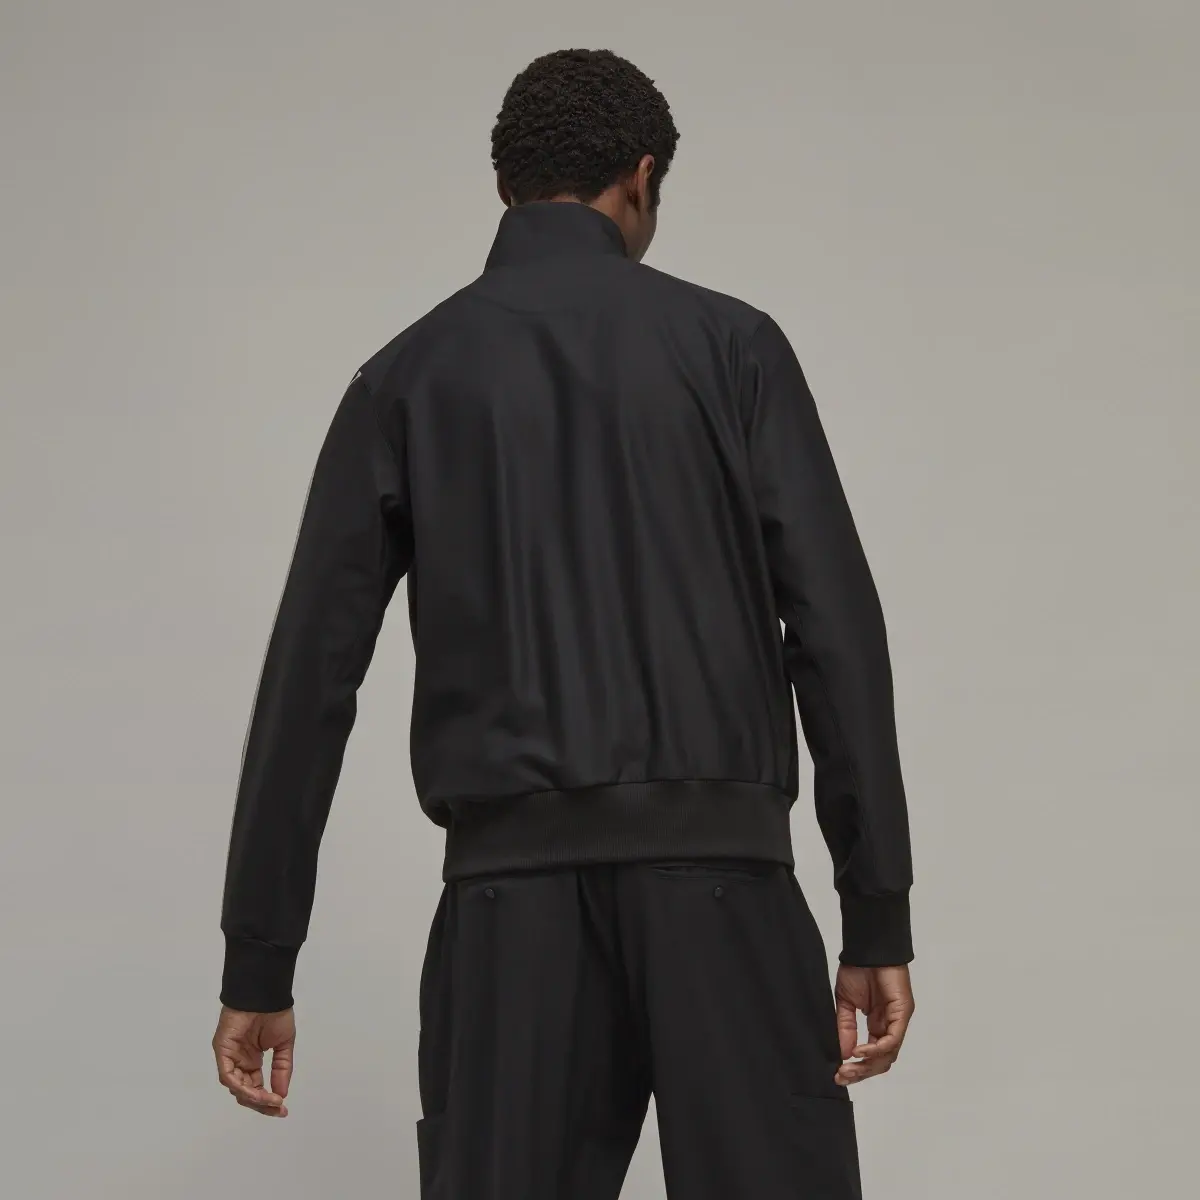 Adidas Y-3 3-Streifen Refined Wool Originals Jacke. 3